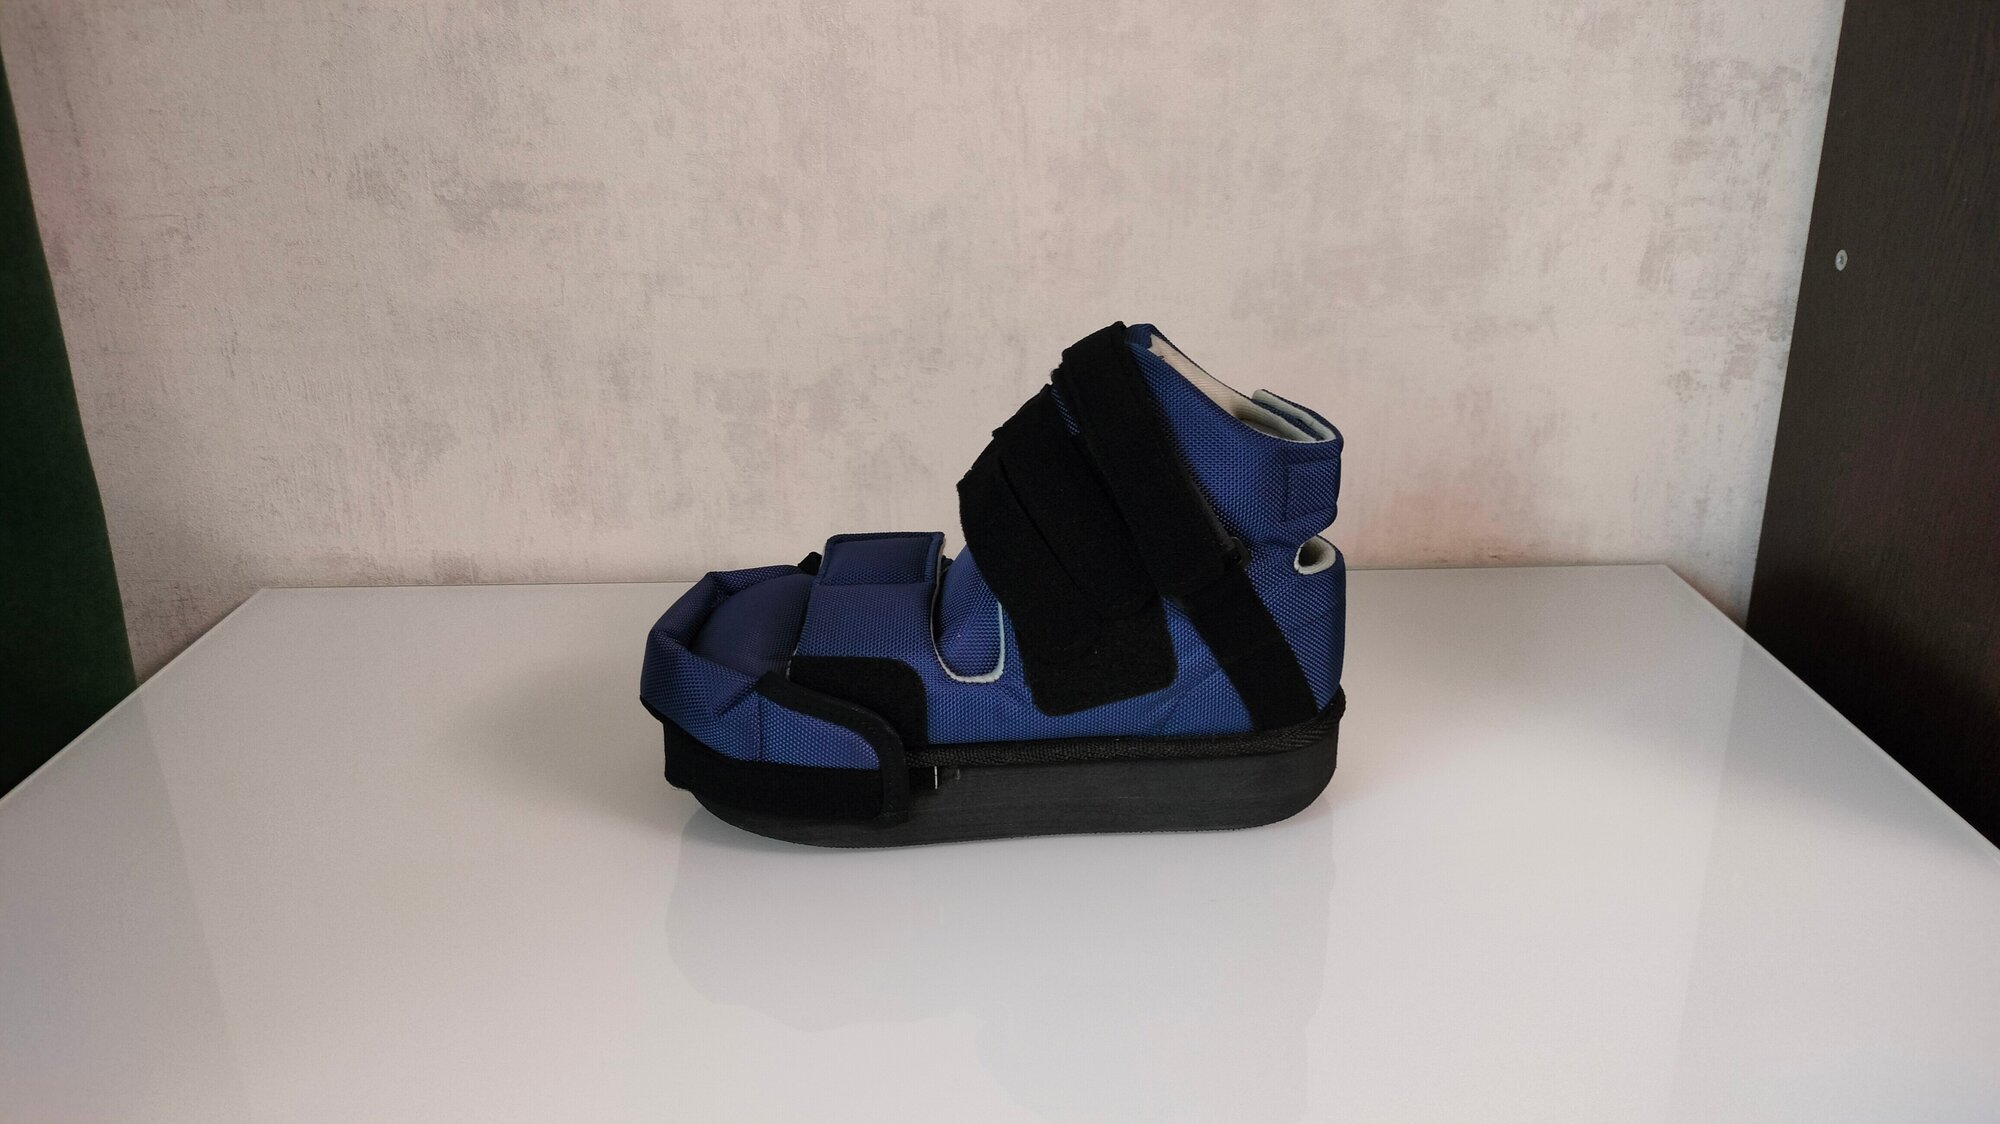 LM-406 LUOMMA барука, компенсаторный ботинок, обувь ортопедическая многоцелевая, послеоперационная, съемный чехол. Цена за 1 полупарок, р.35-37 - фотография № 10